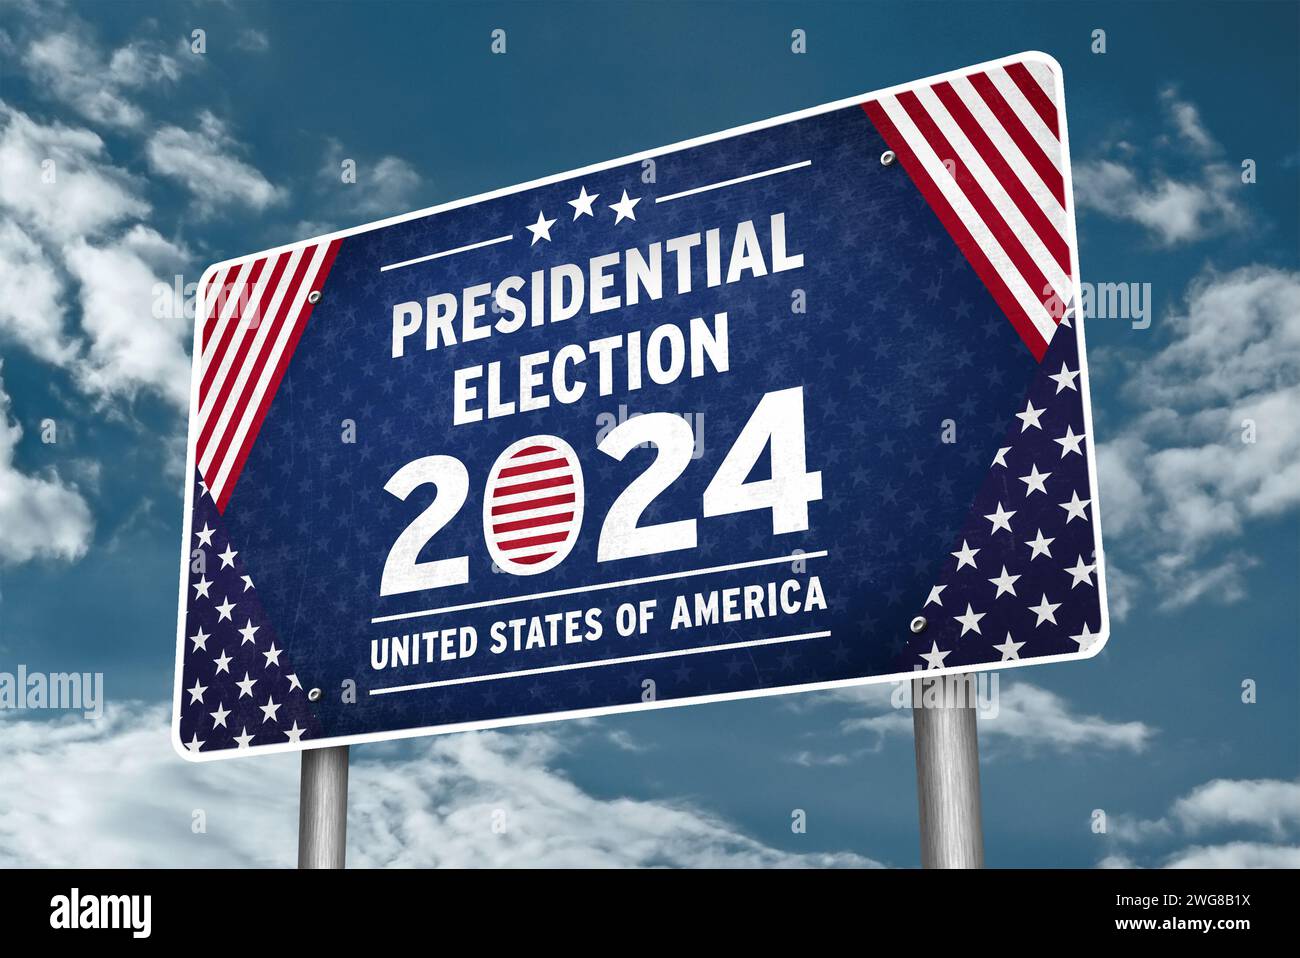 Elezioni presidenziali negli Stati Uniti d'America nel 2024 - informazioni sui segnali stradali Foto Stock